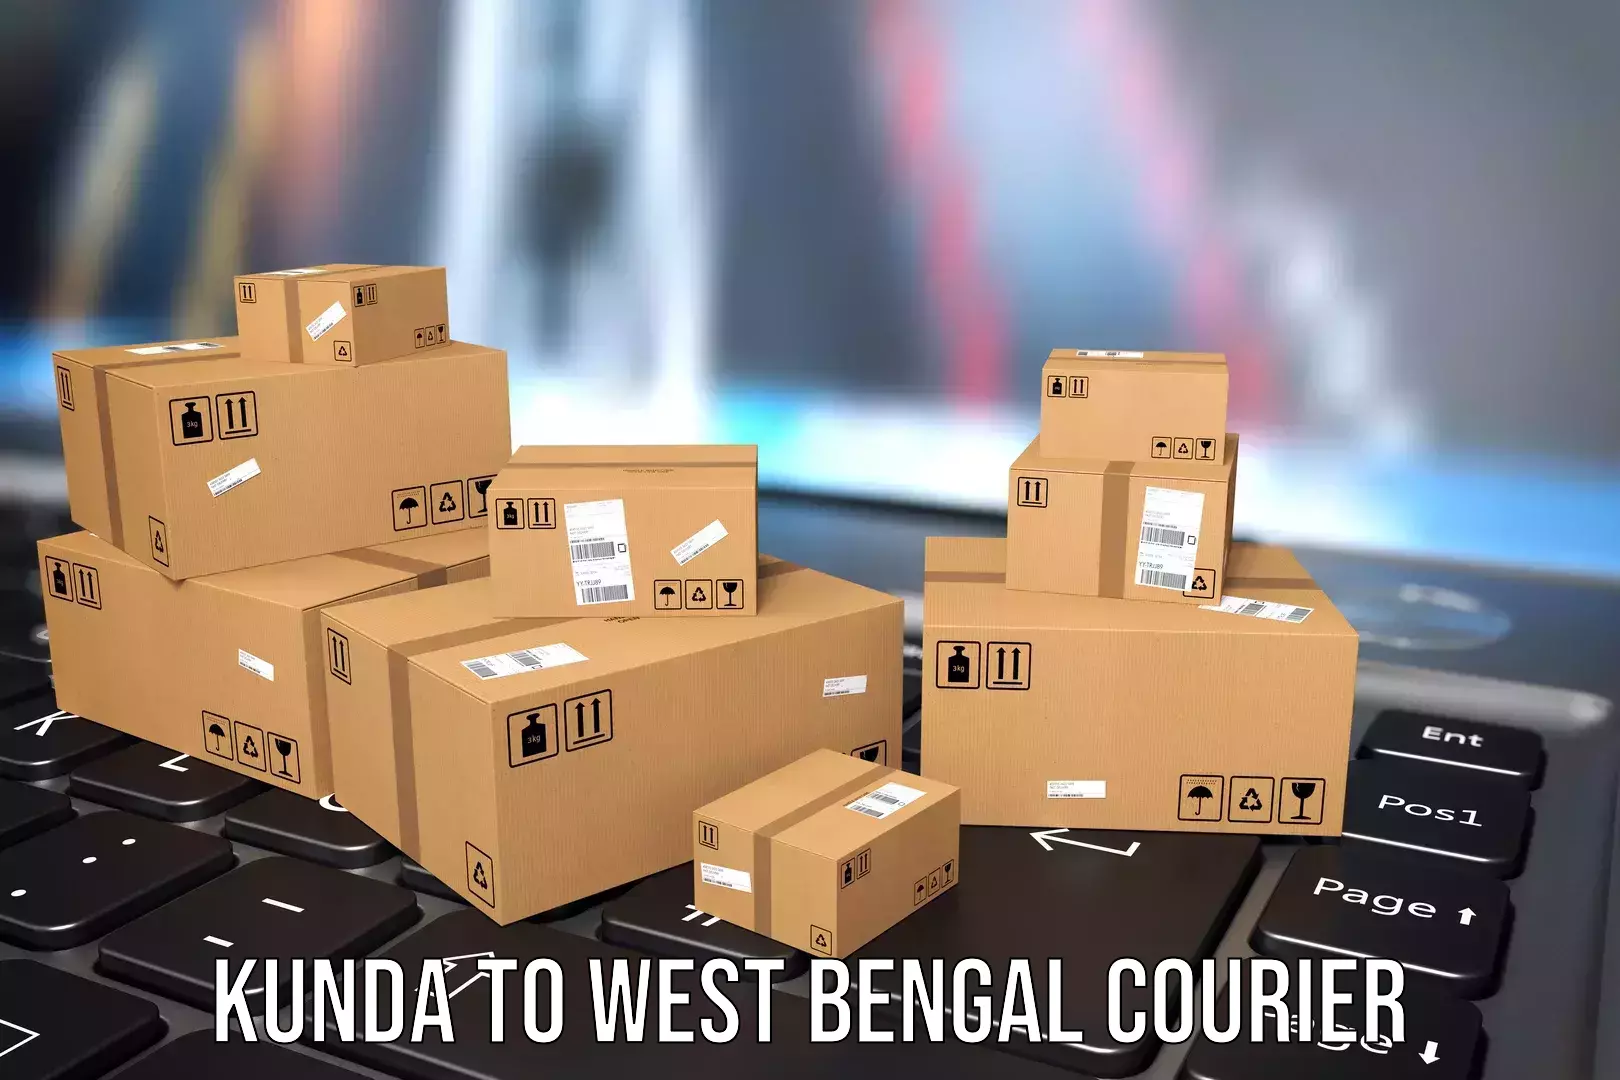 Luggage shipment specialists Kunda to Barobisha